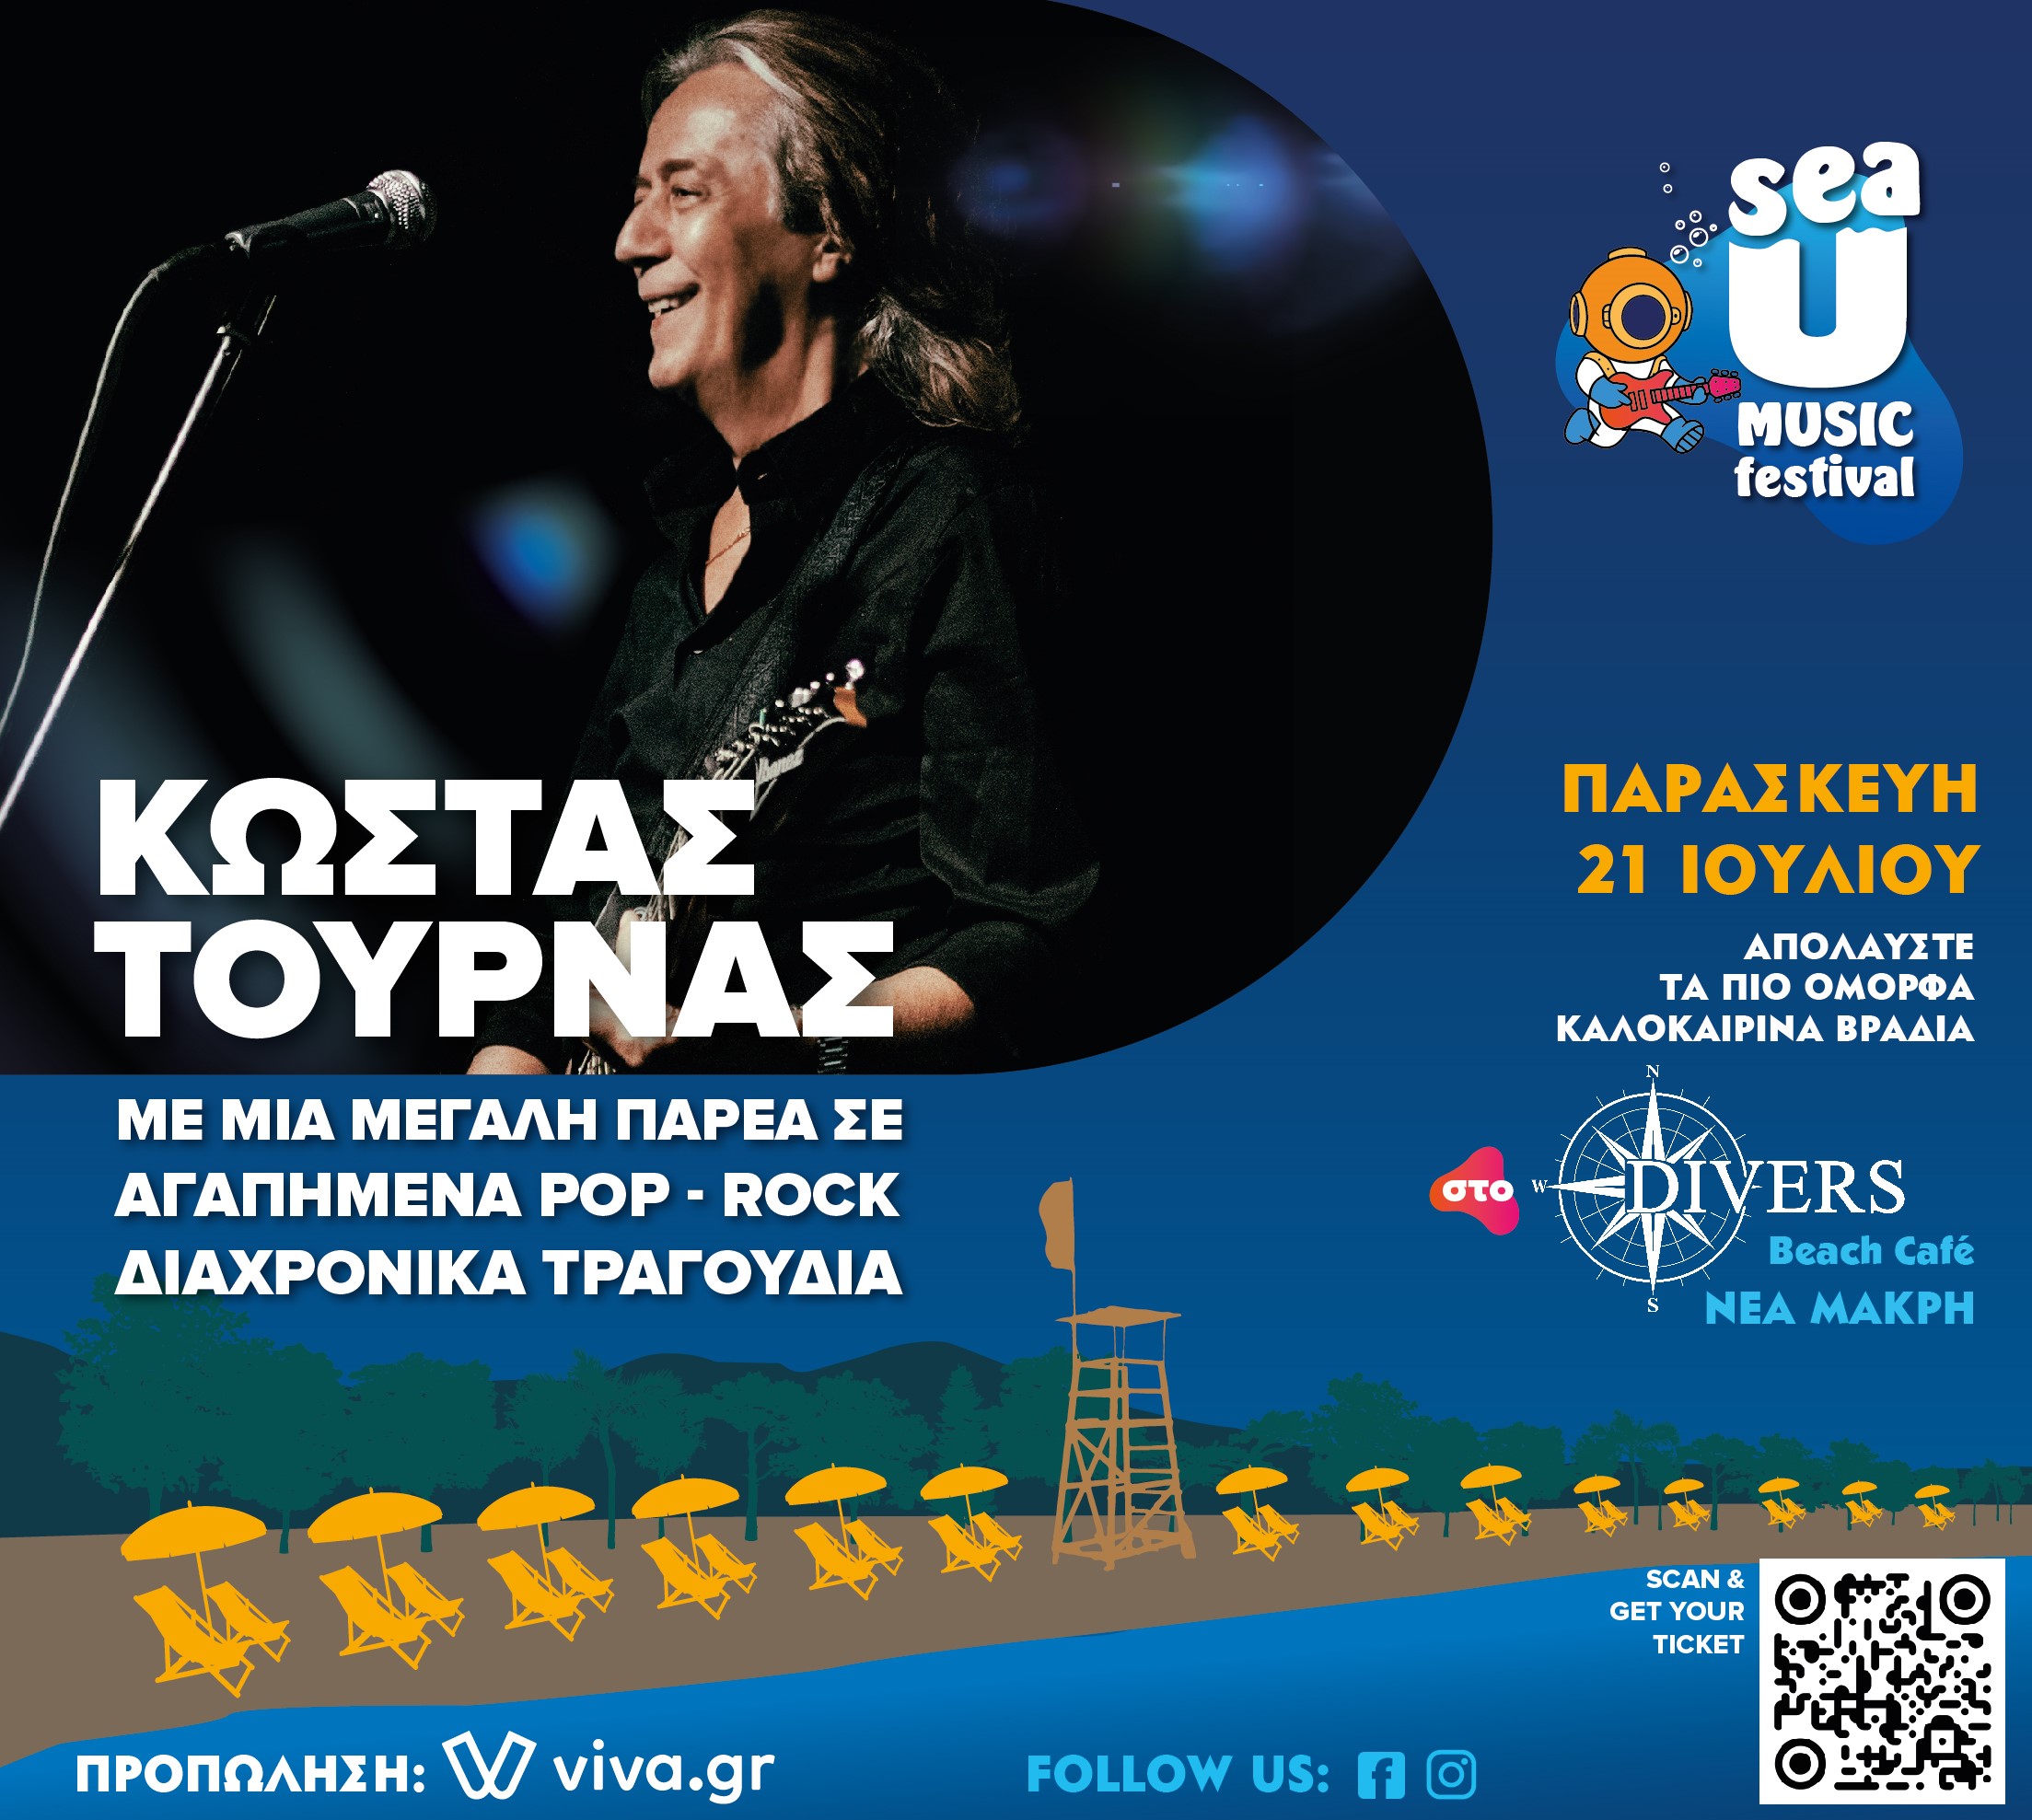 Sea U Music Festival